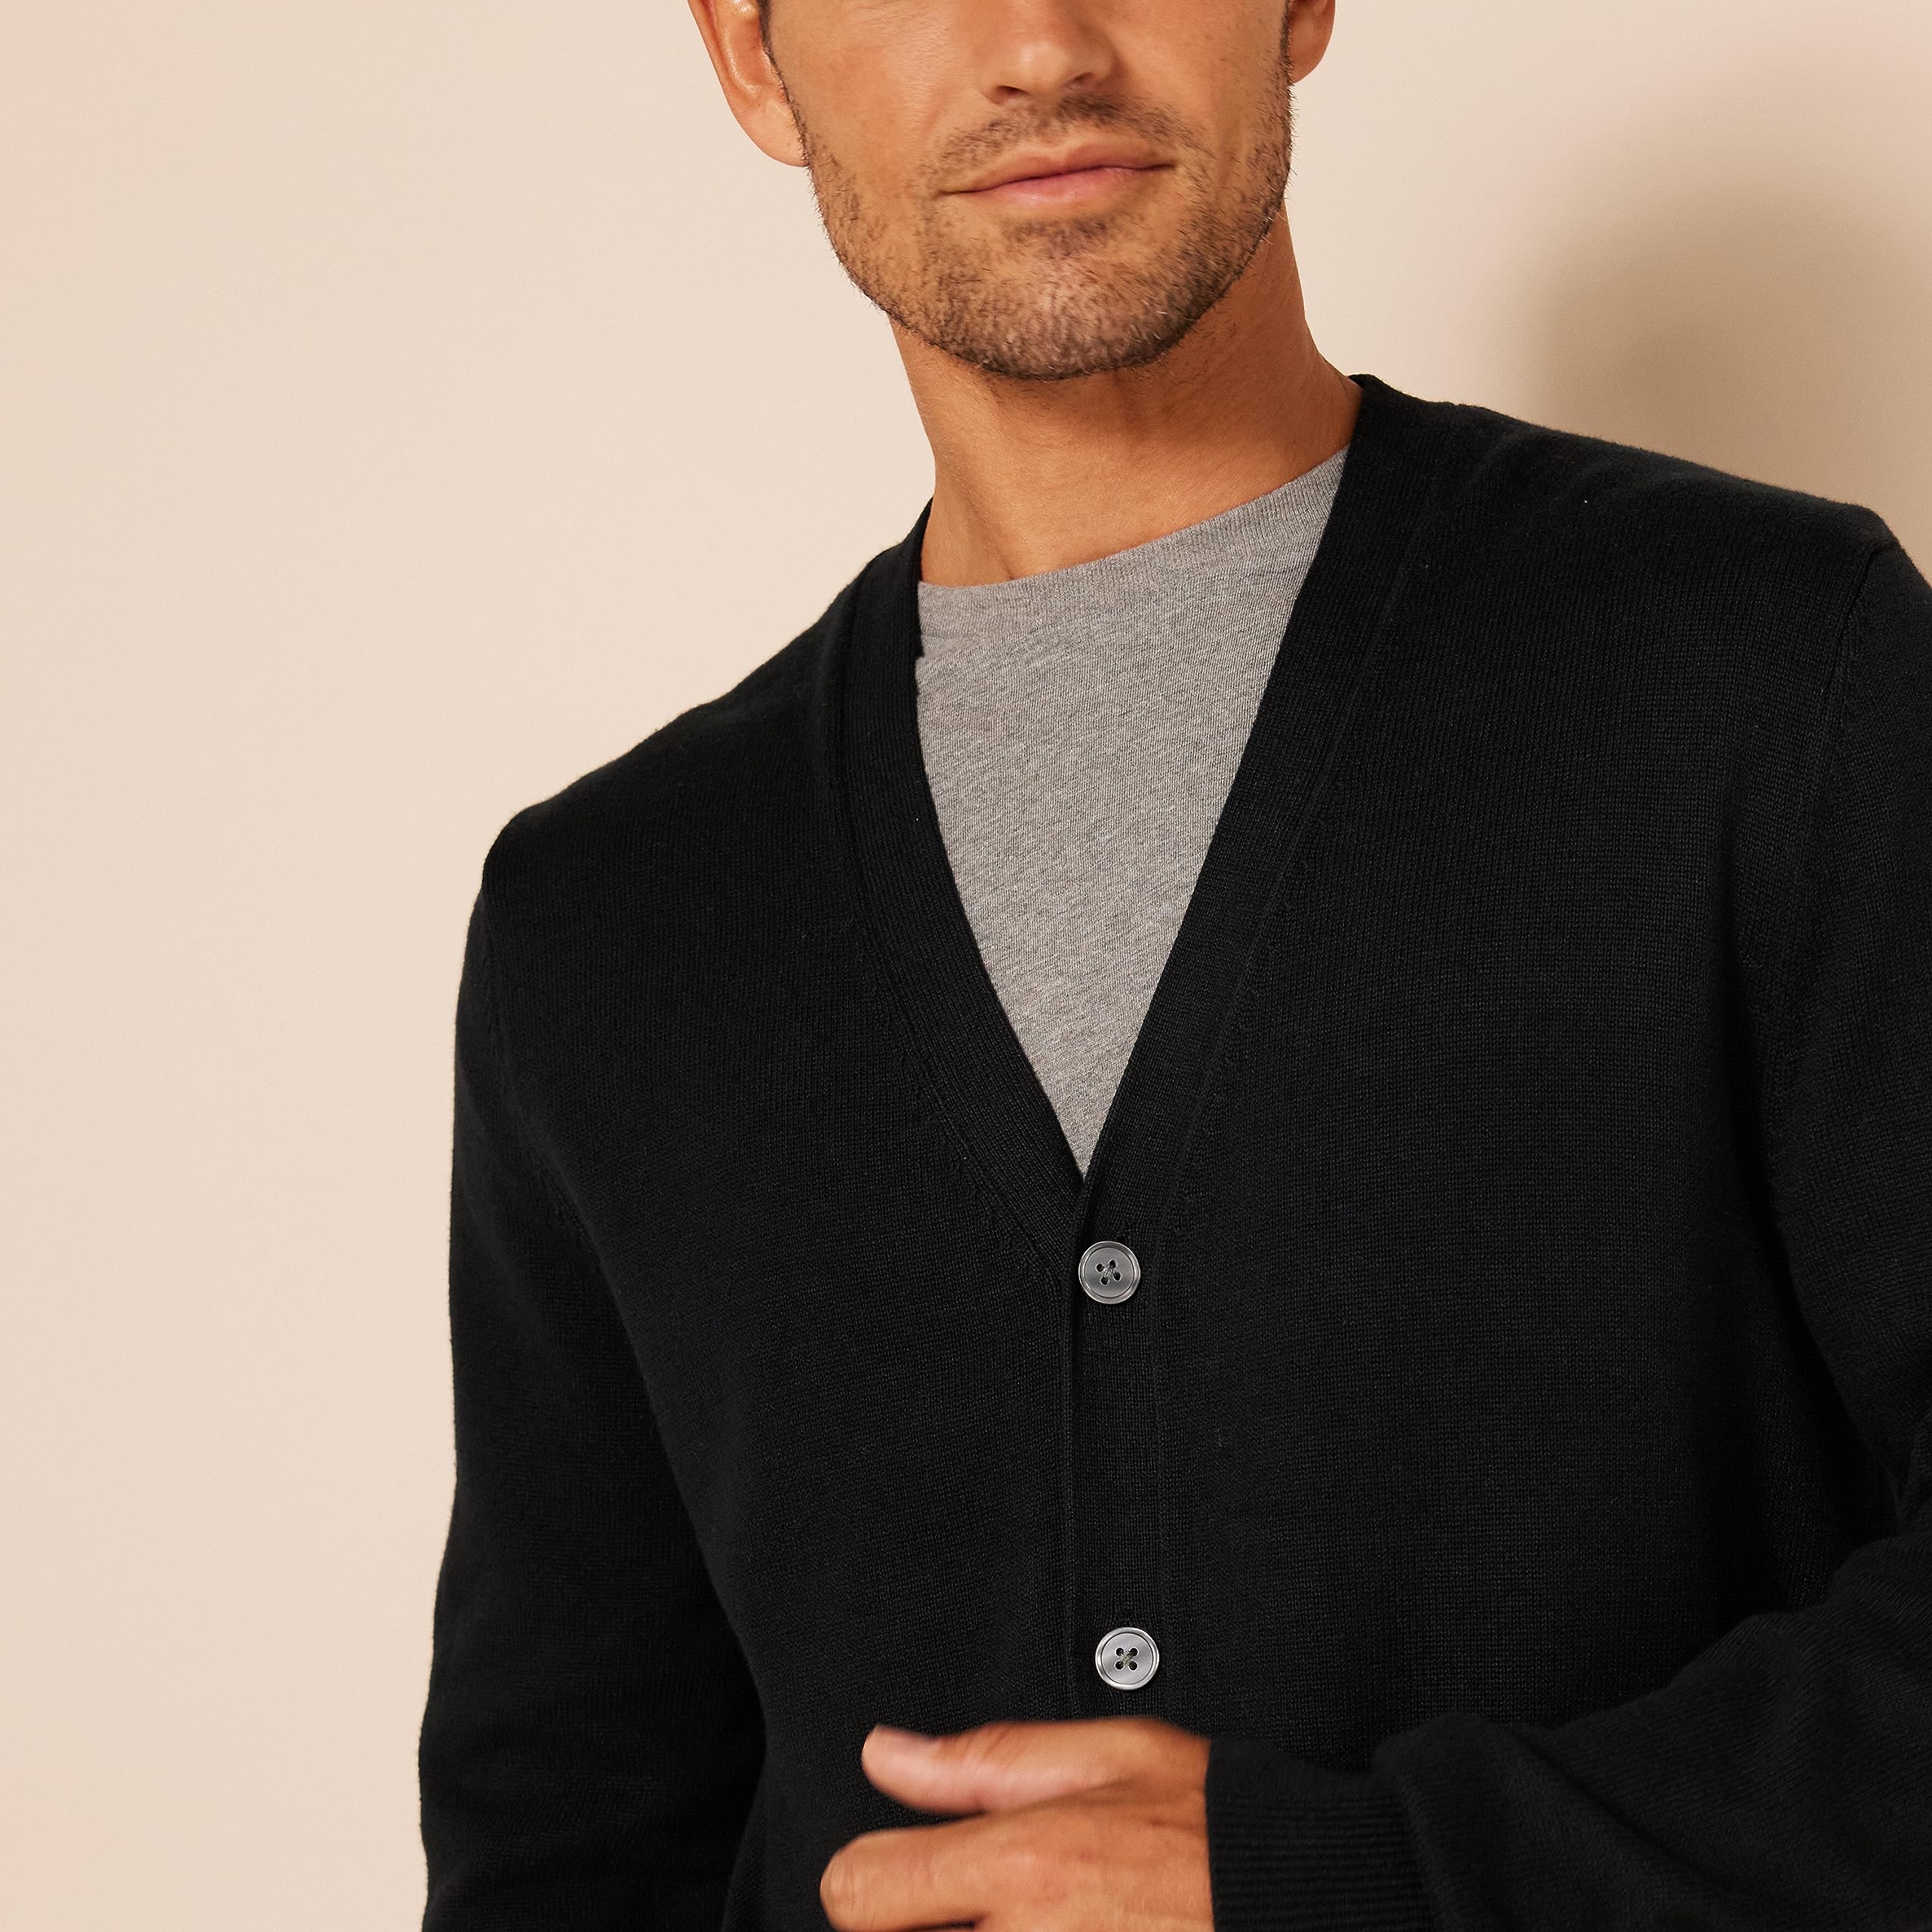 Amazon Essentials Men's Cotton Cardigan Sweater